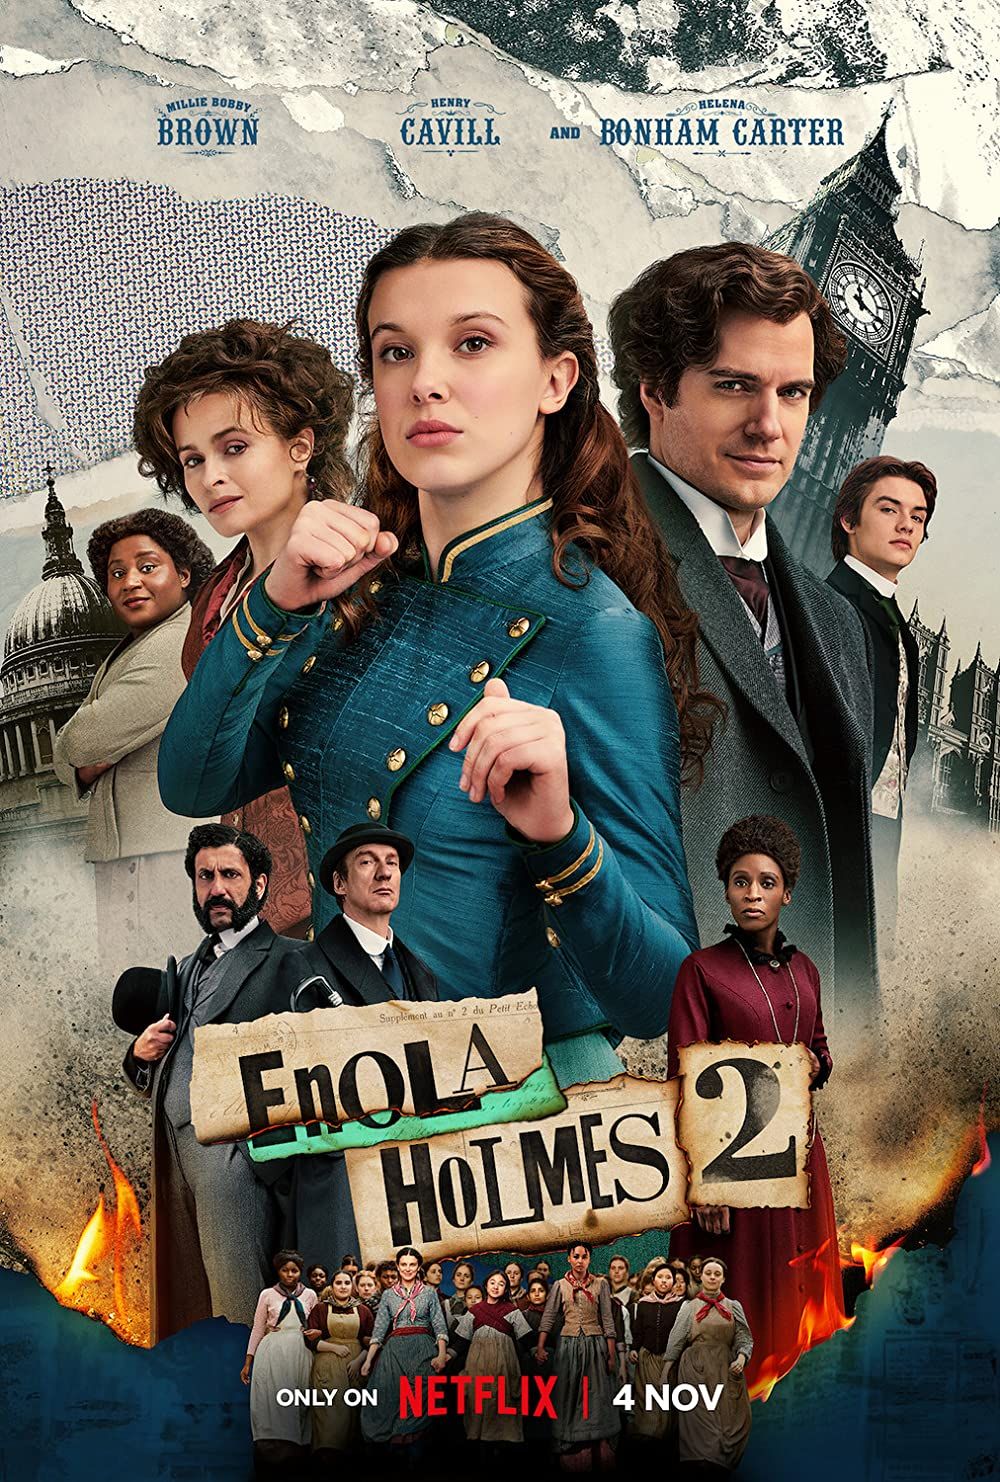 Enola Holmes 2 (2022) Hindi Dubbed HDRip download full movie